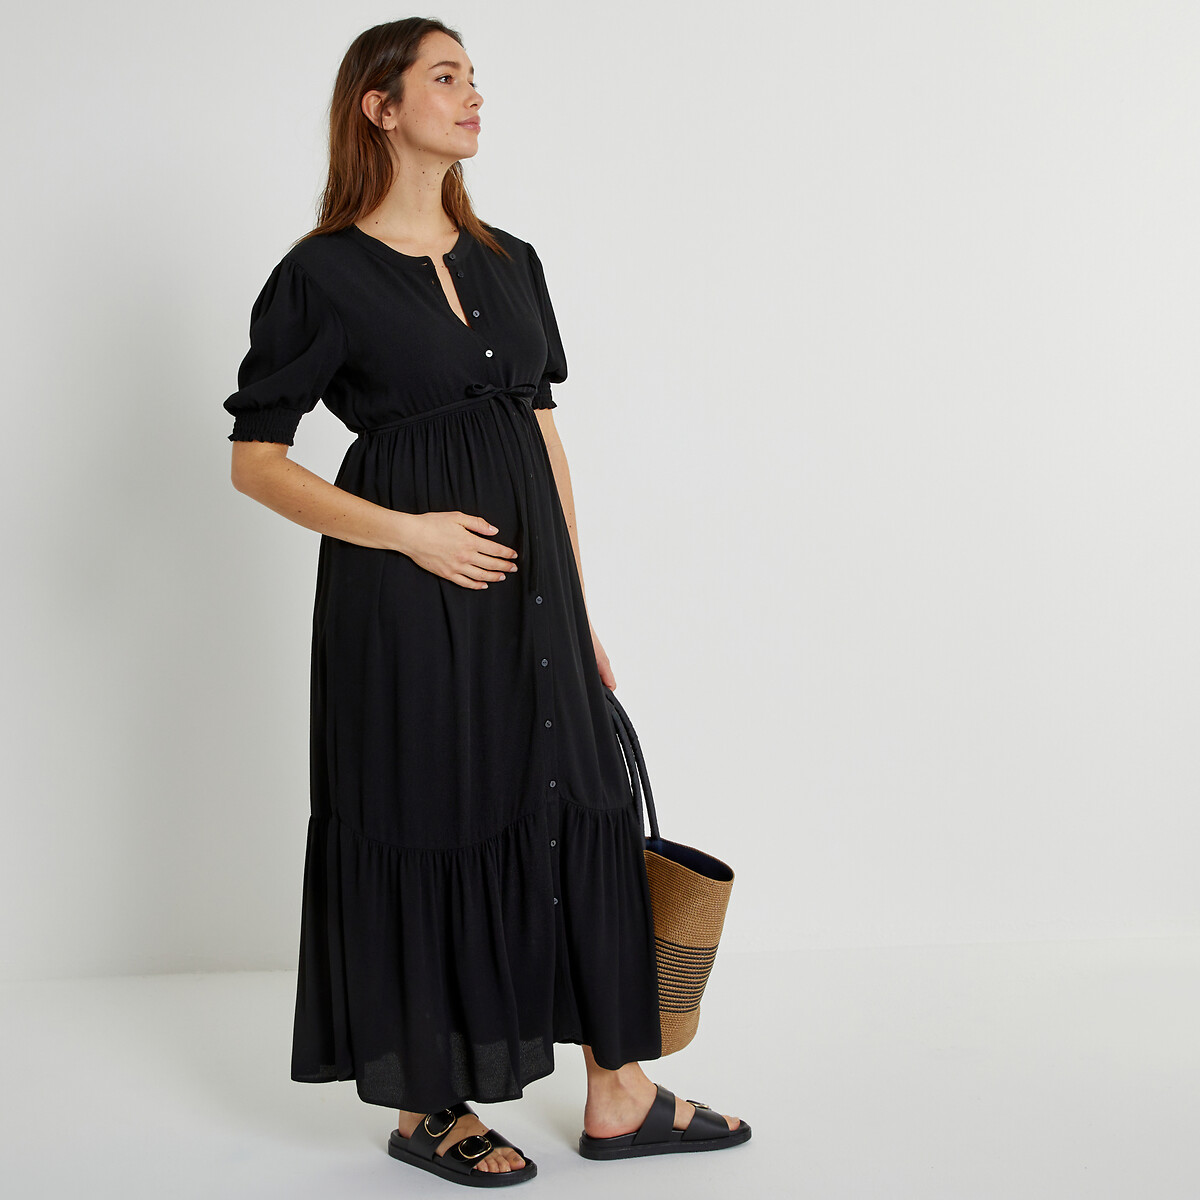 Платье длинное на пуговицах для периода беременности 52 черный платье длинное для периода беременности принт в горошек 46 розовый